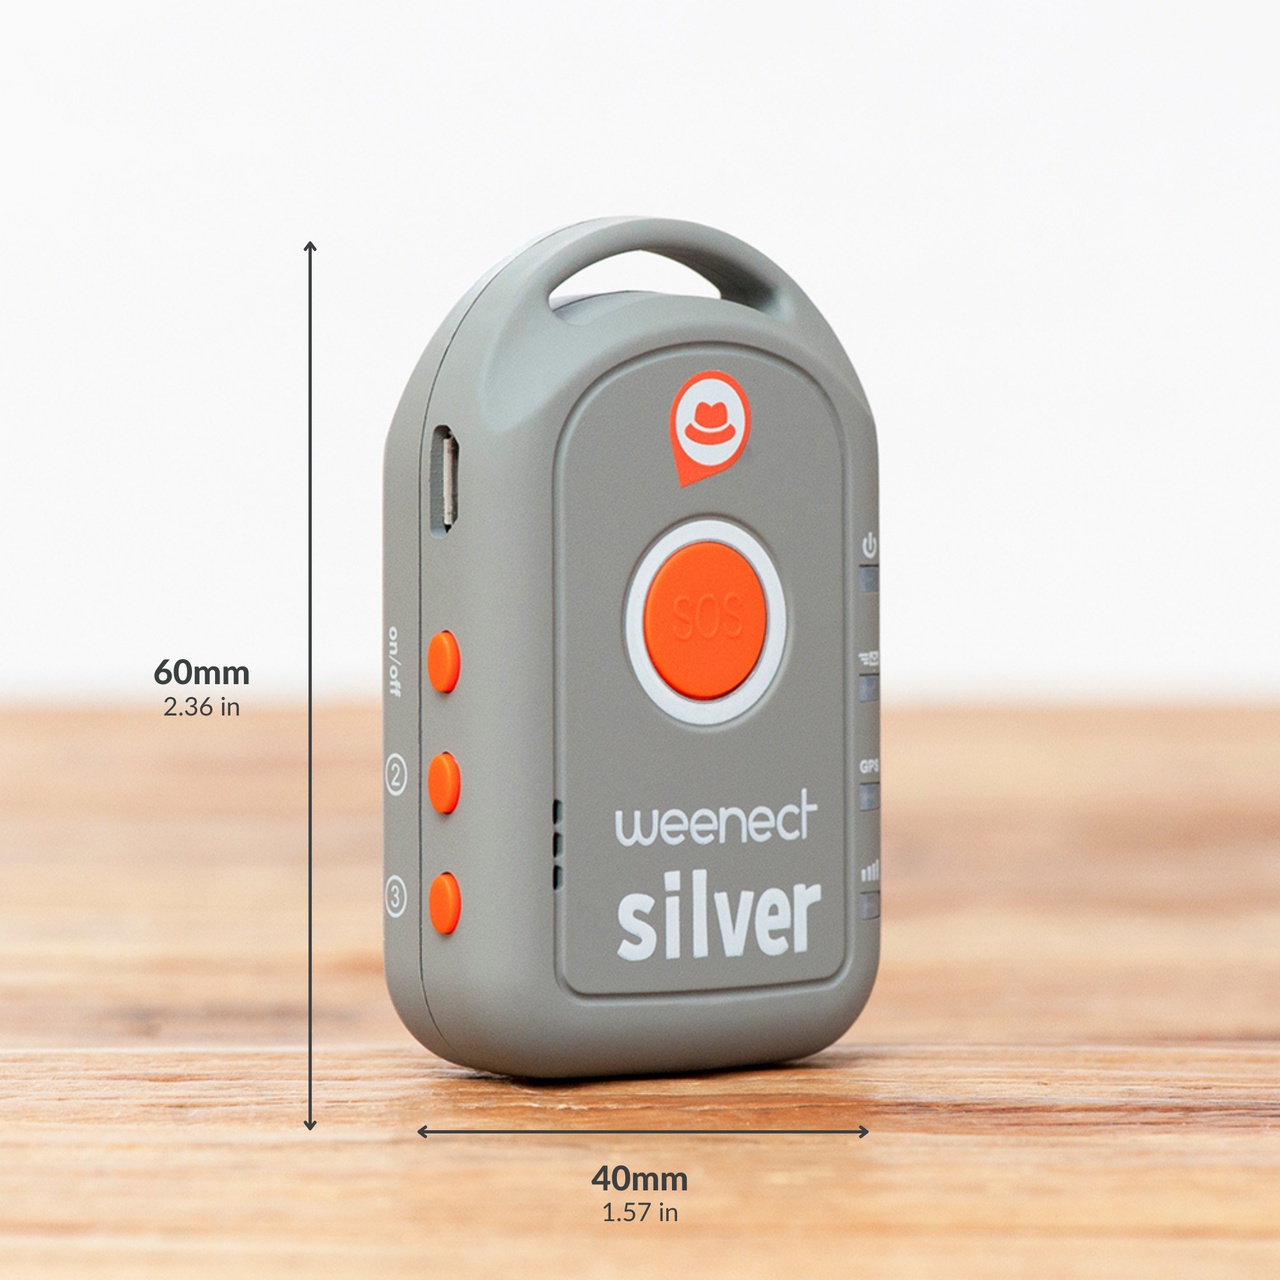 Téléalarme GPS pour senior - Weenect Silver